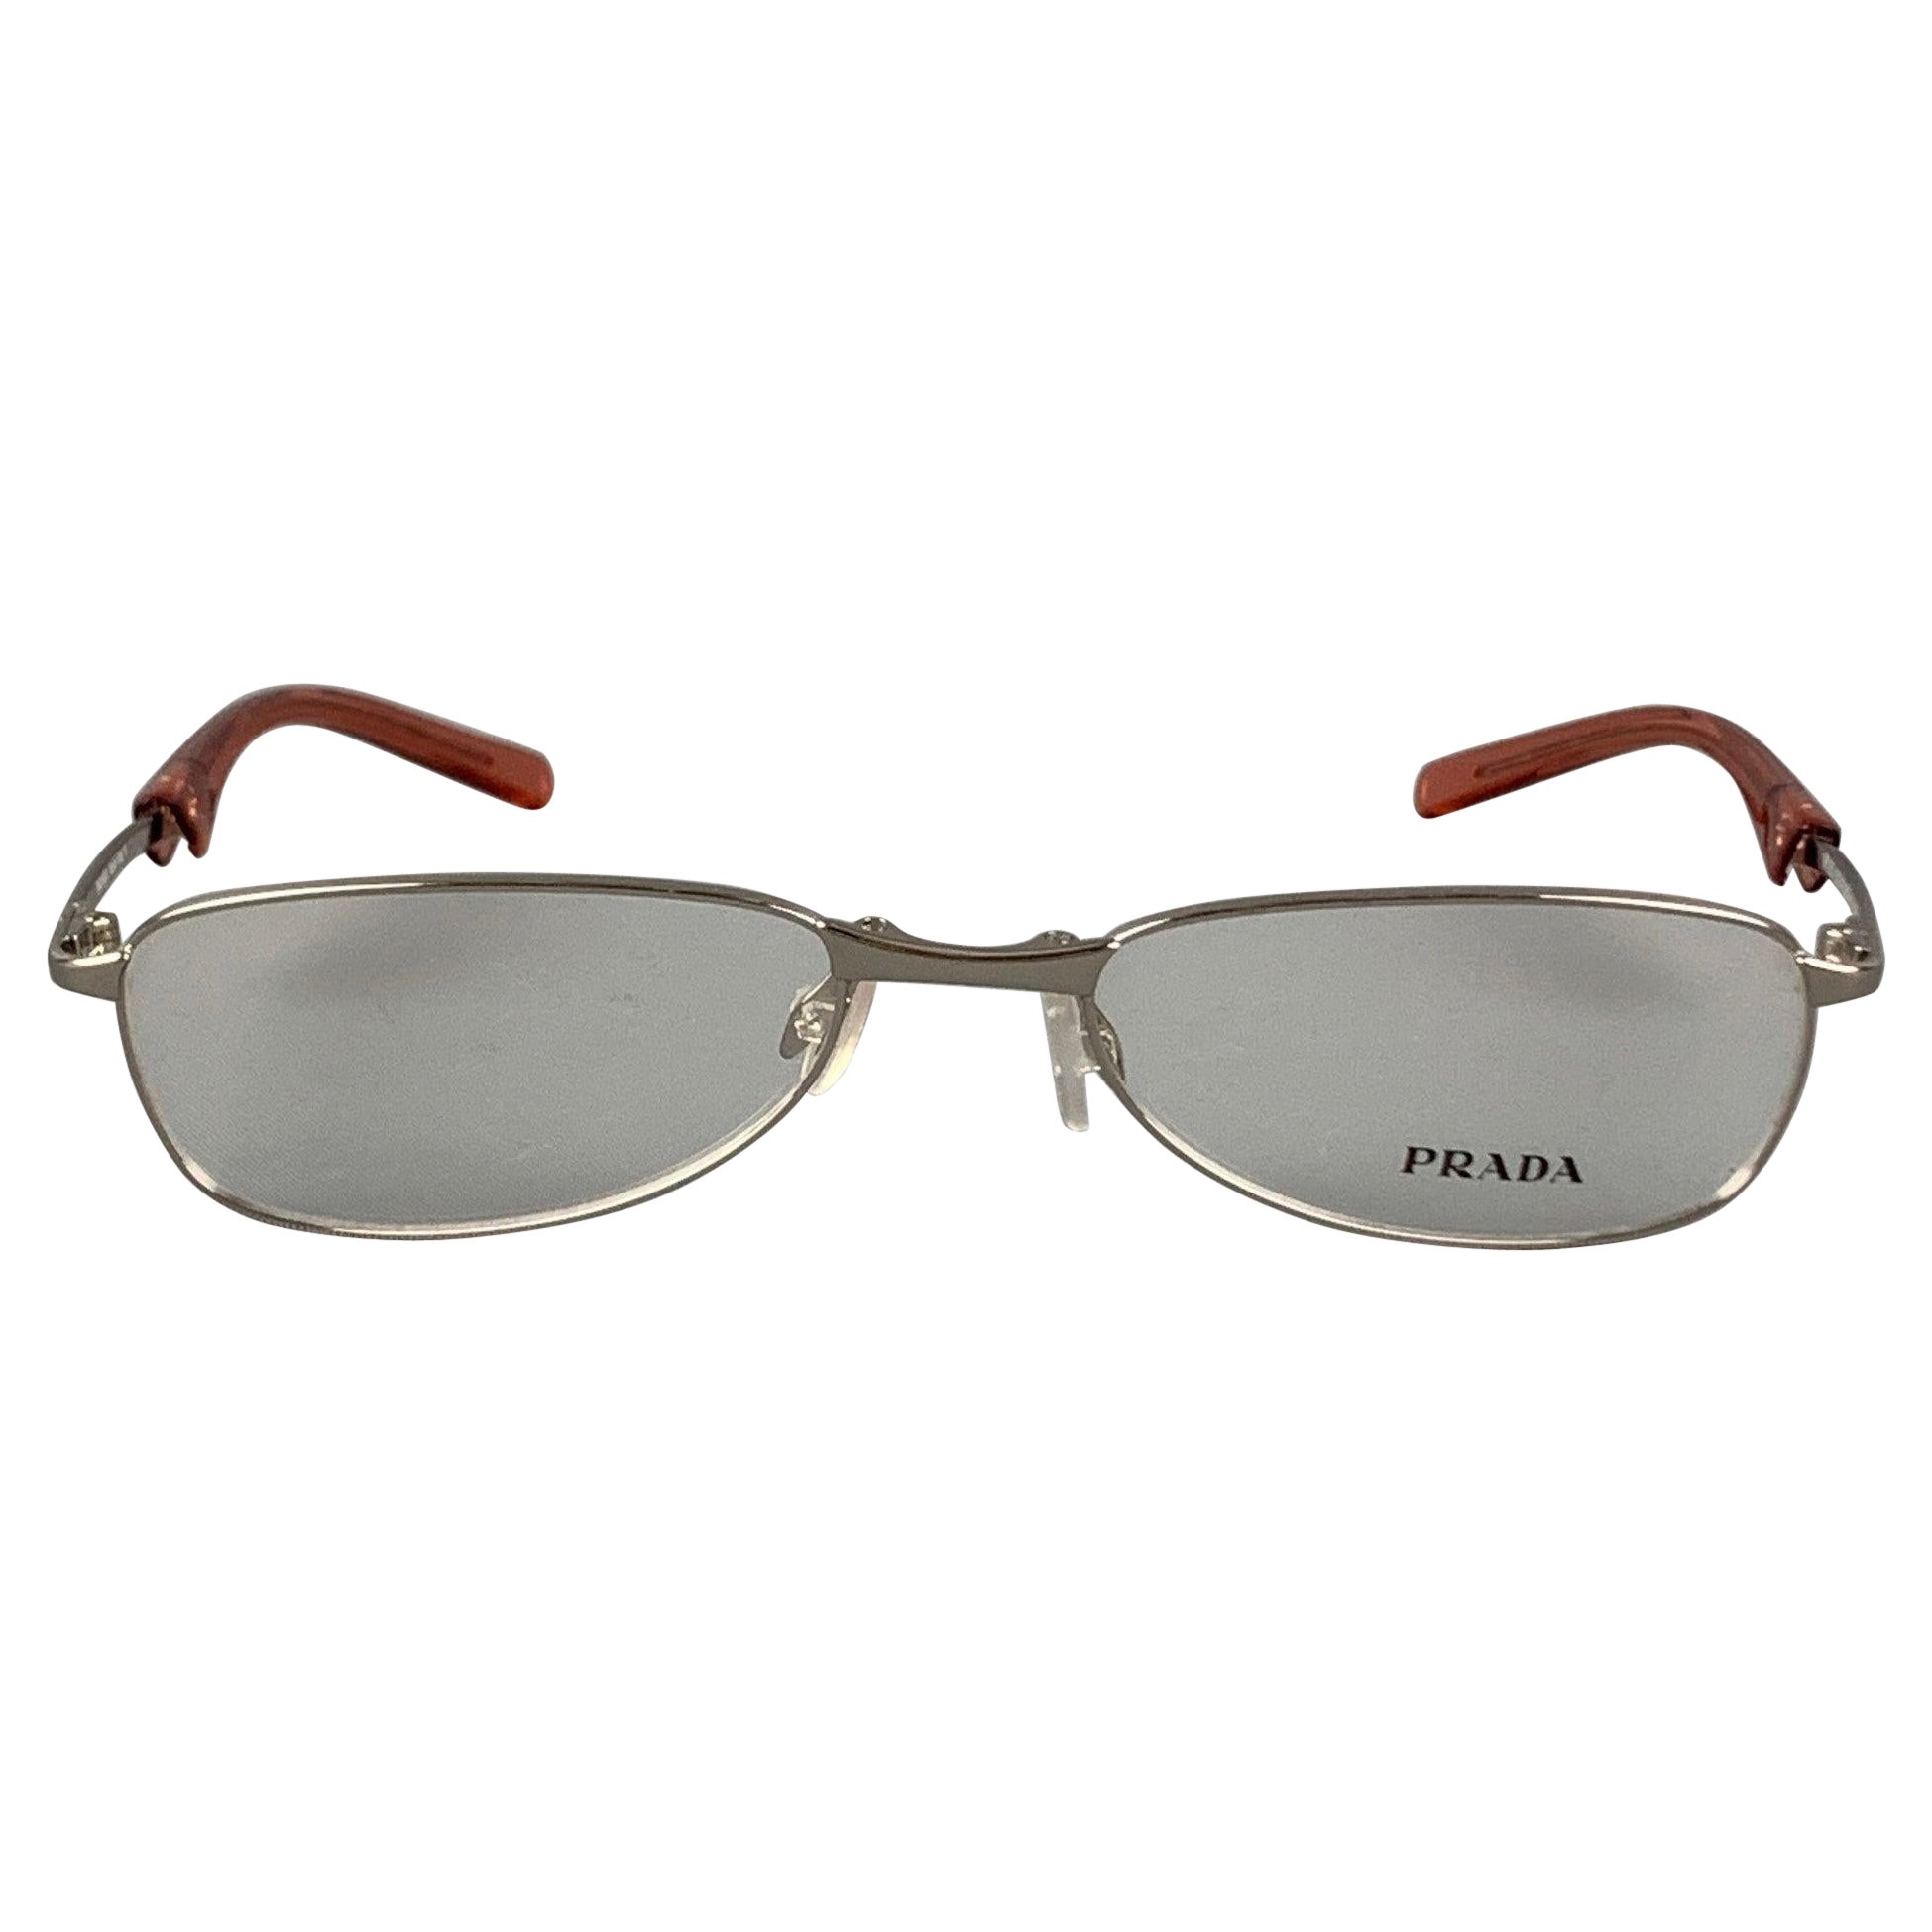 PRADA Silver Metal Sunglasses